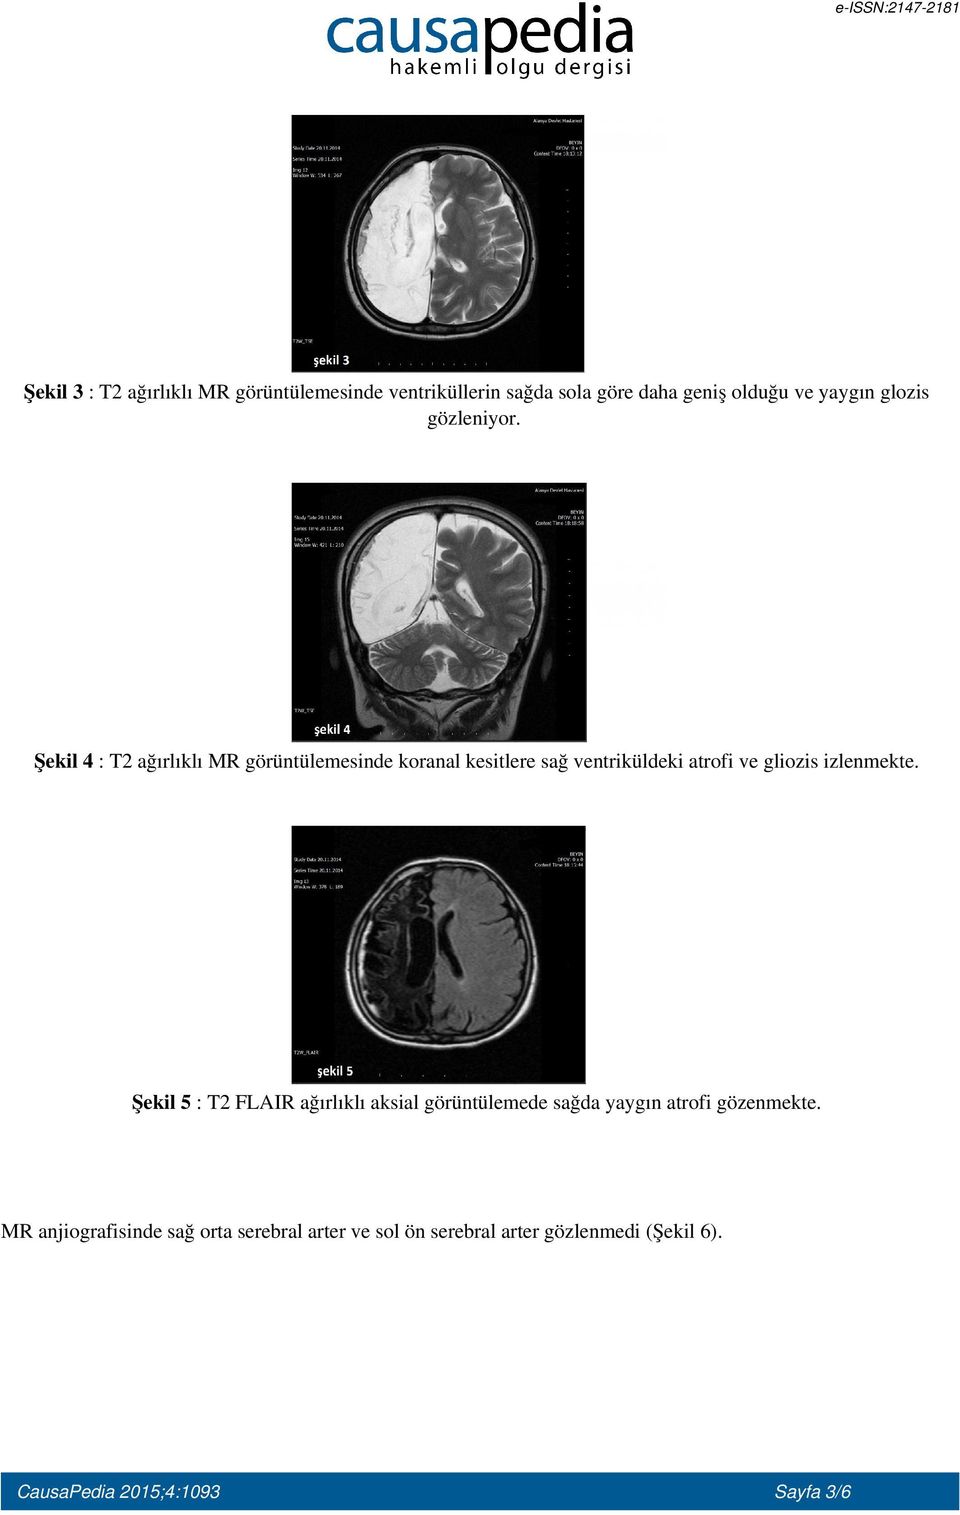 Şekil 4 : T2 ağırlıklı MR görüntülemesinde koranal kesitlere sağ ventriküldeki atrofi ve gliozis